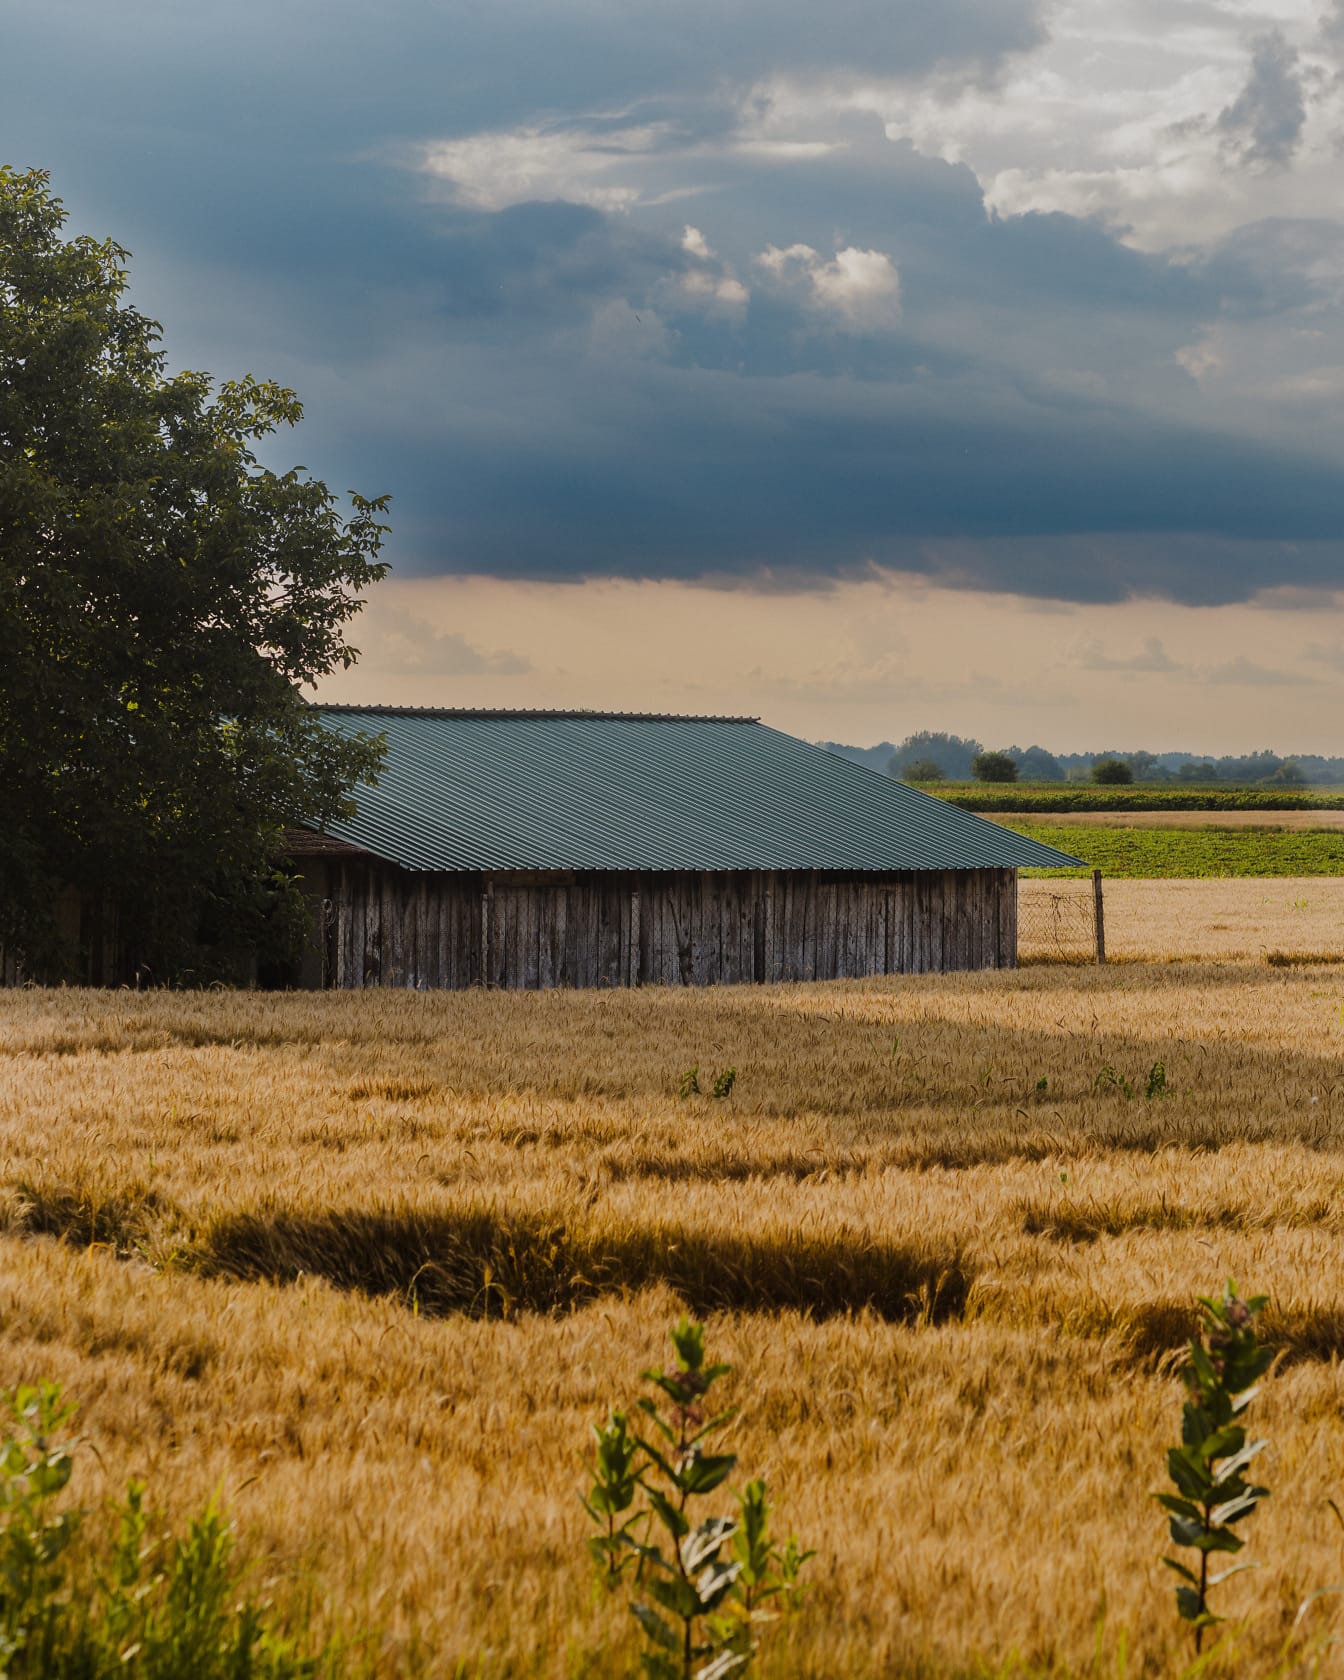 Stare wiejskie ranczo na polu pszenicy w sezonie letnim